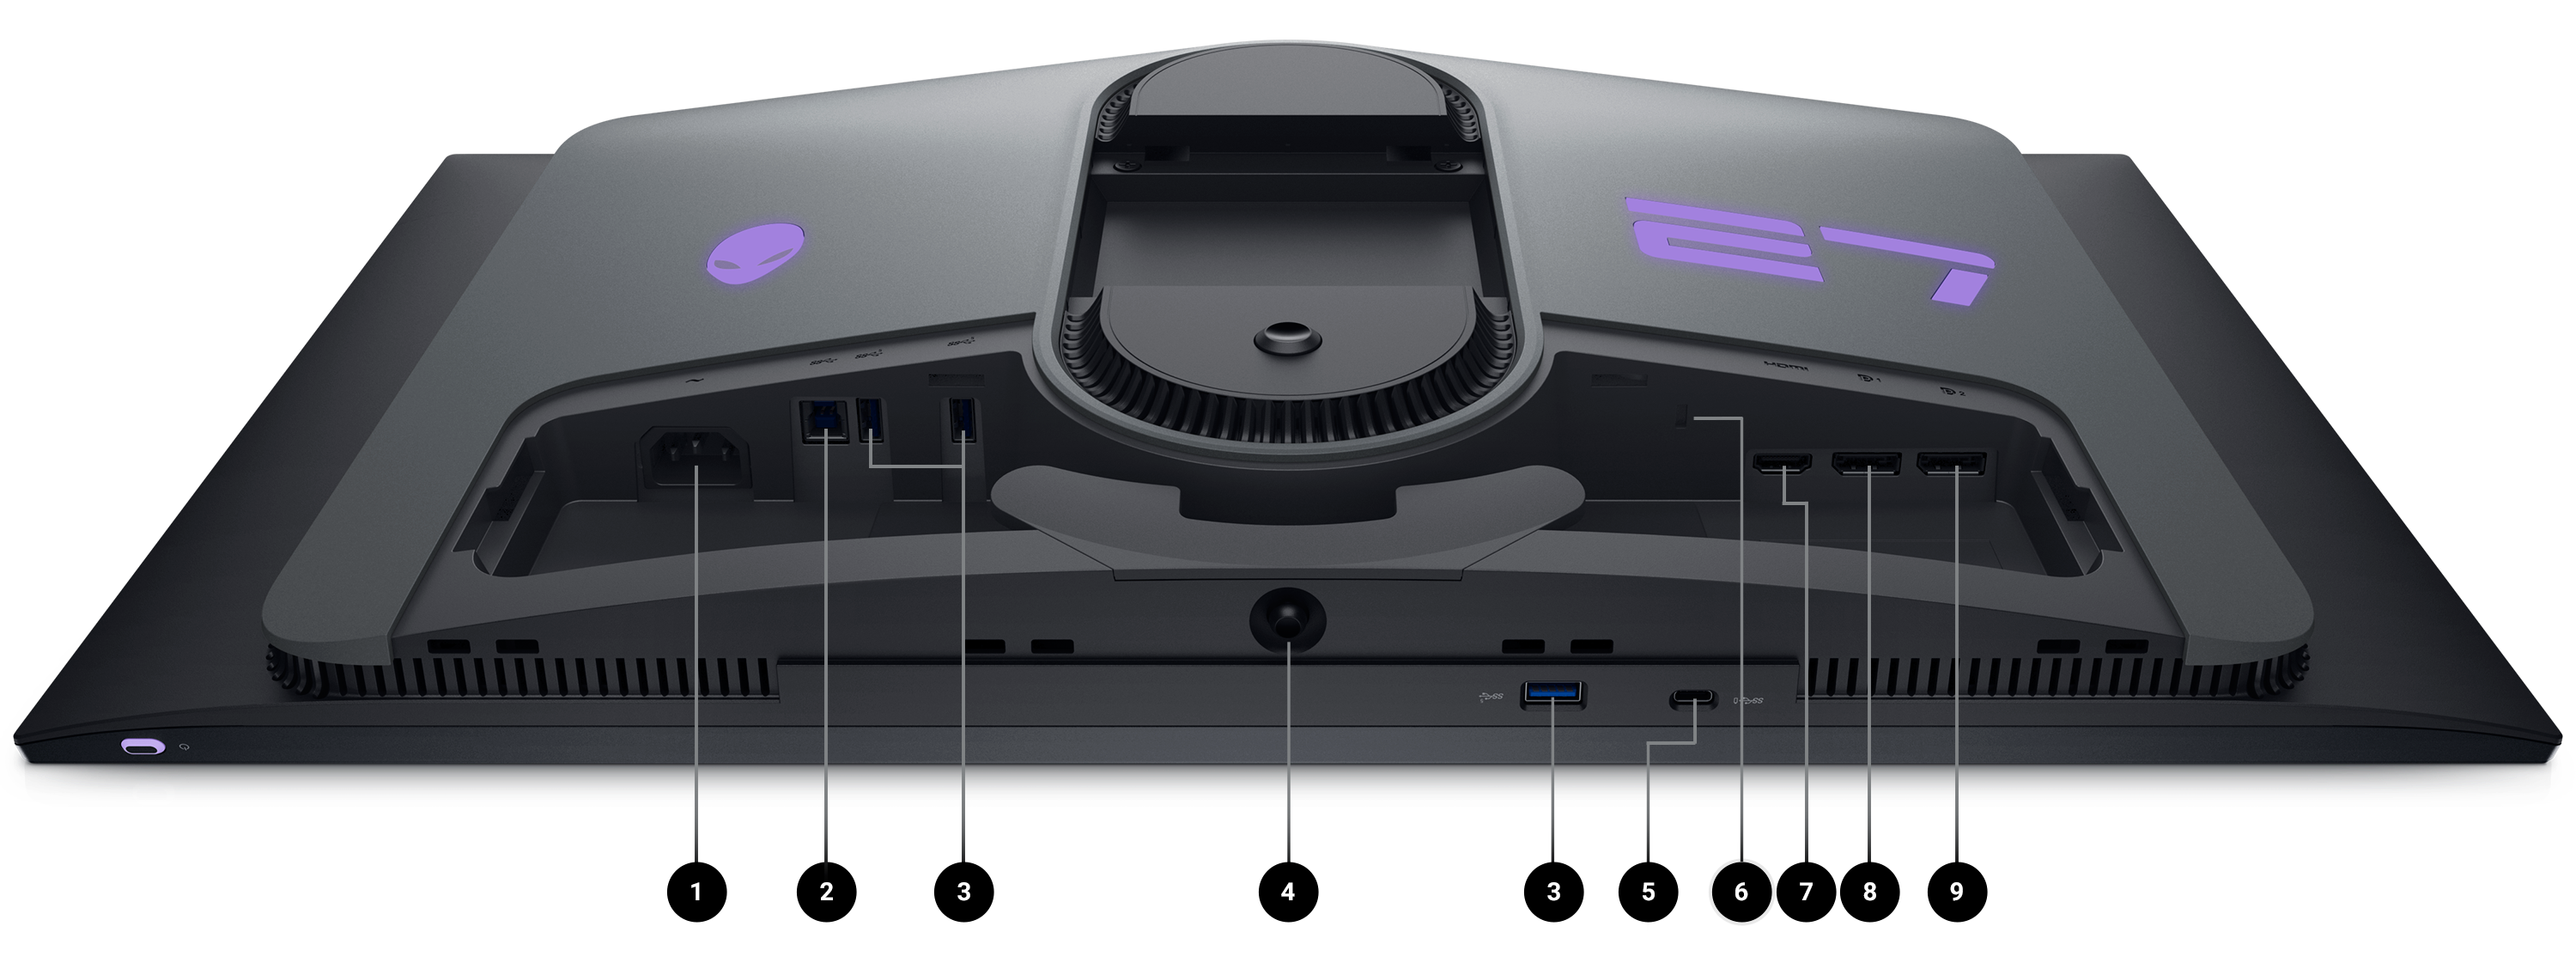 Écran gaming Dell AW2725DF avec l’écran vers le bas et des numéros compris entre 1 et 9 indiquant les options de connectivité du produit.